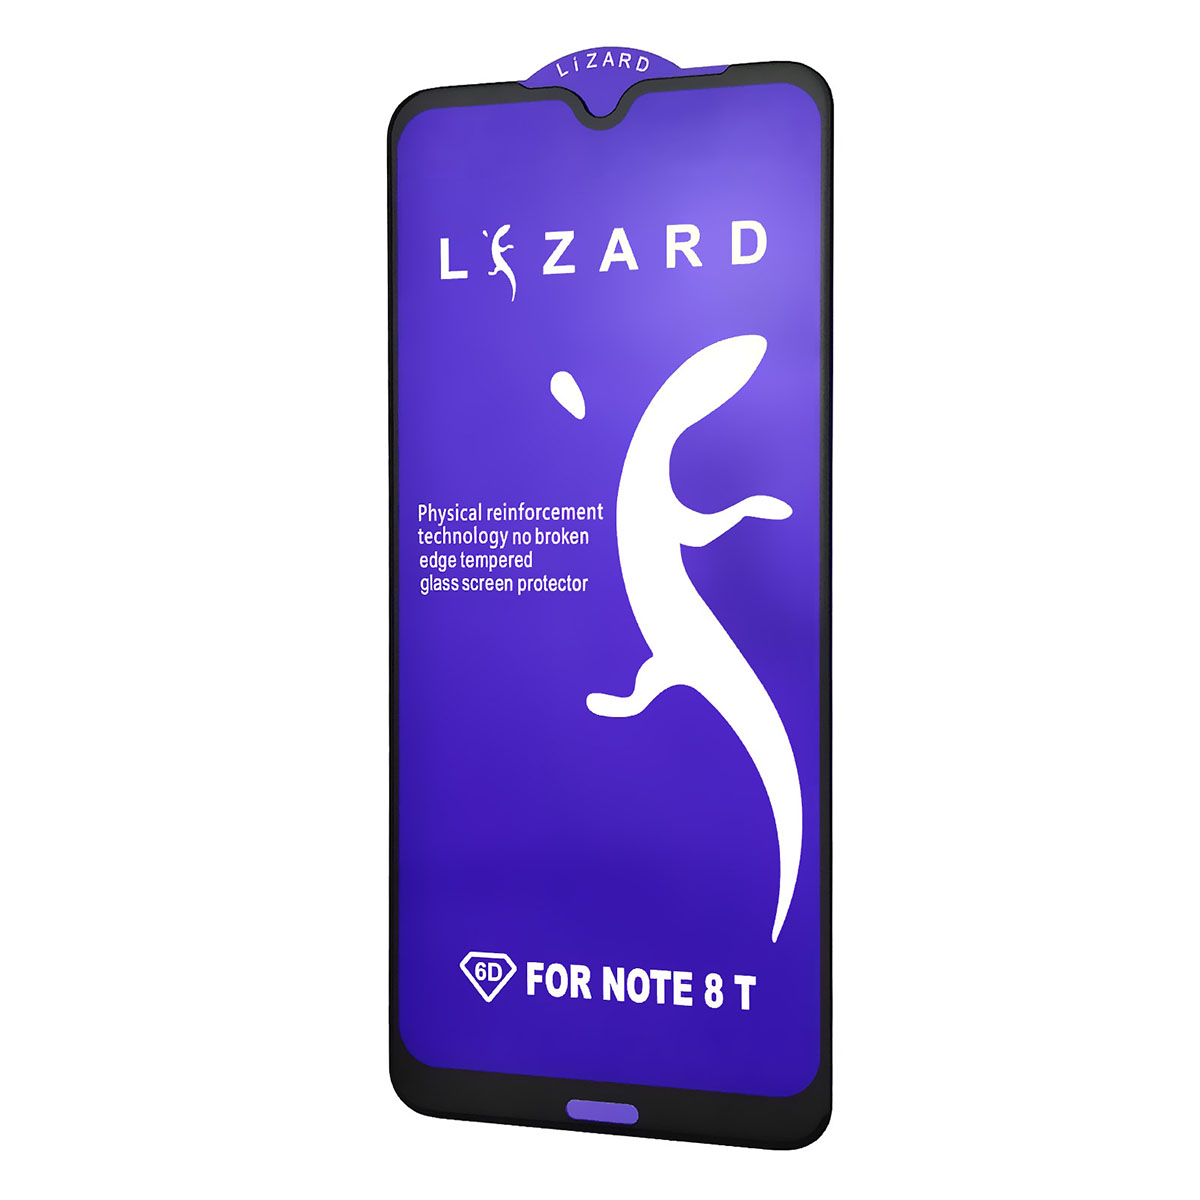 Защитное стекло 9D Lizard для XIAOMI Redmi Note 8T, цвет черный.